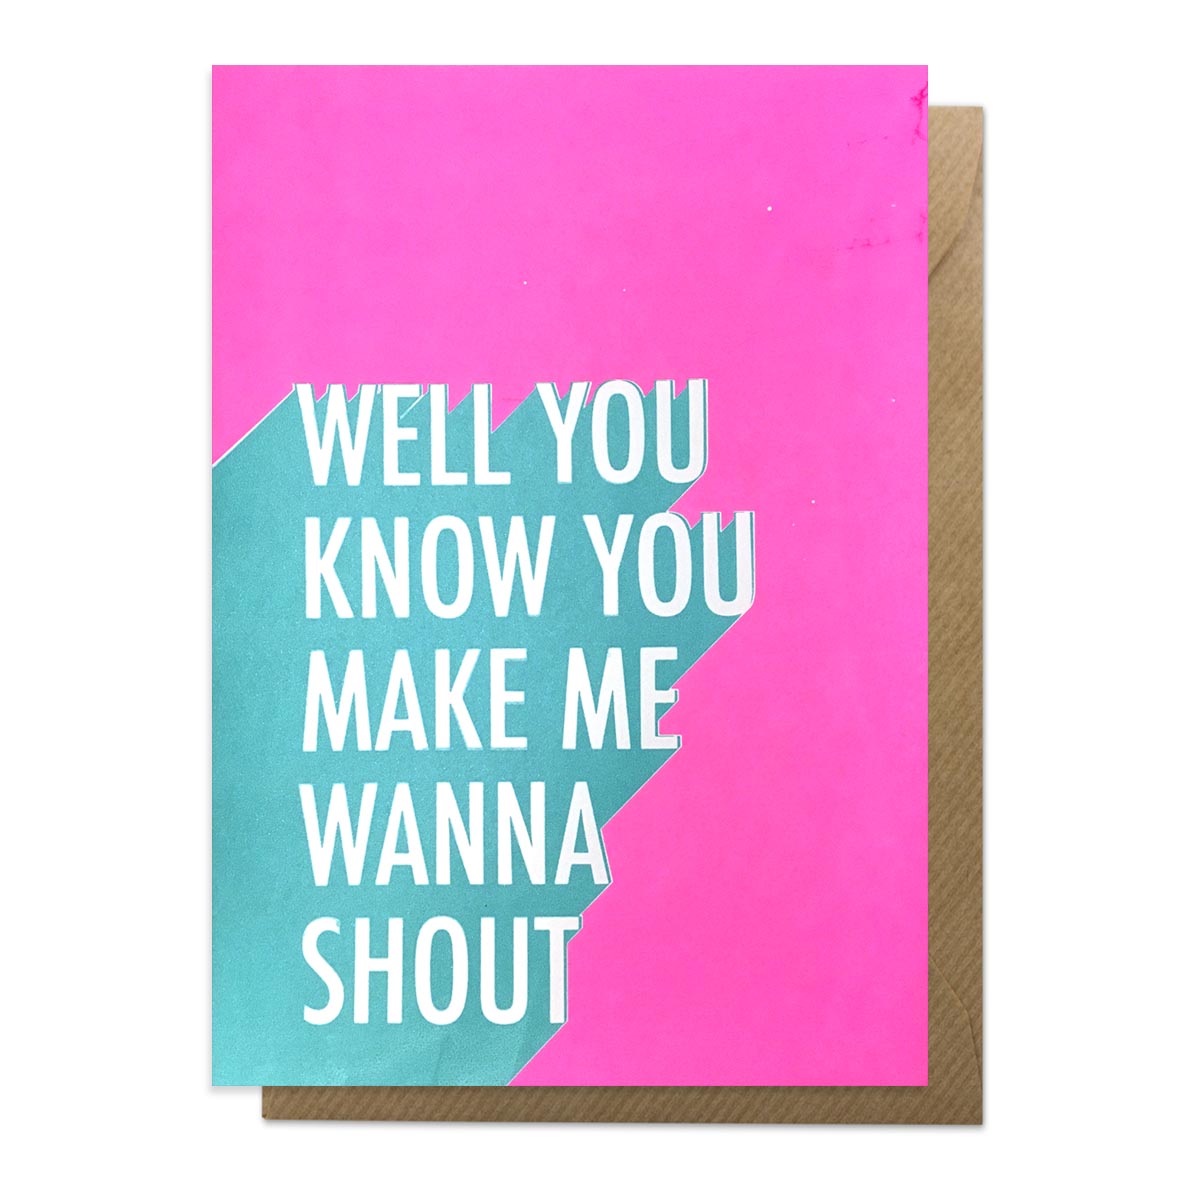 Shout lyrics greeting card